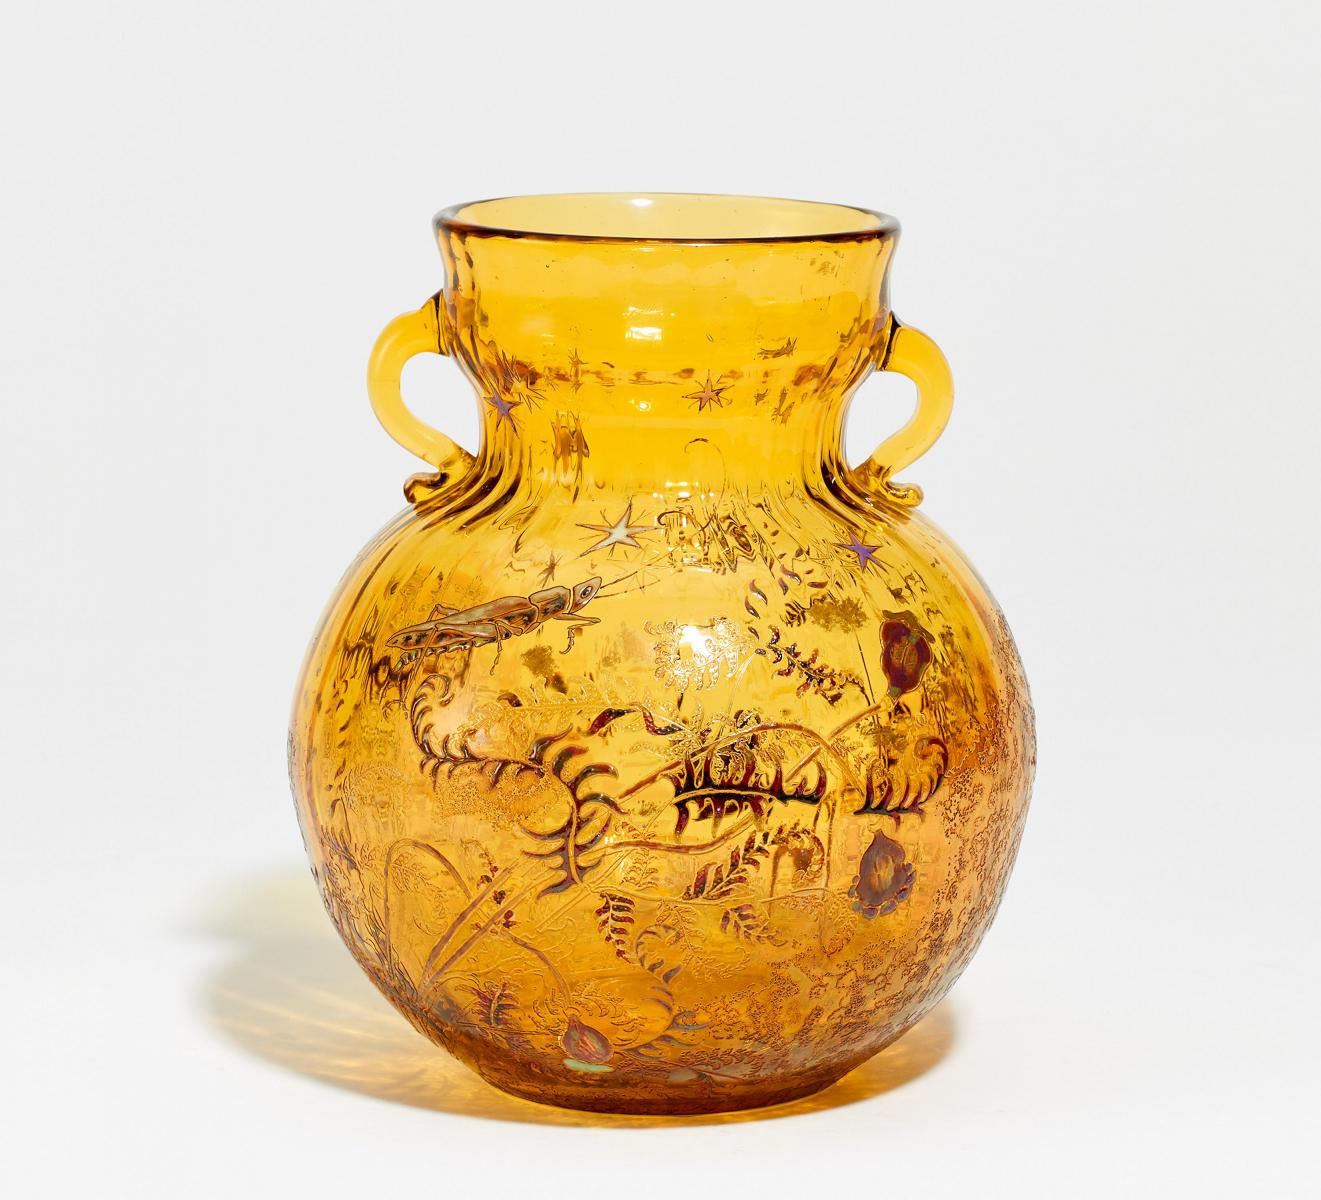 Emile Galle - Gebauchte Vase mit Heuschrecke und Mohn, 66516-9, Van Ham Kunstauktionen